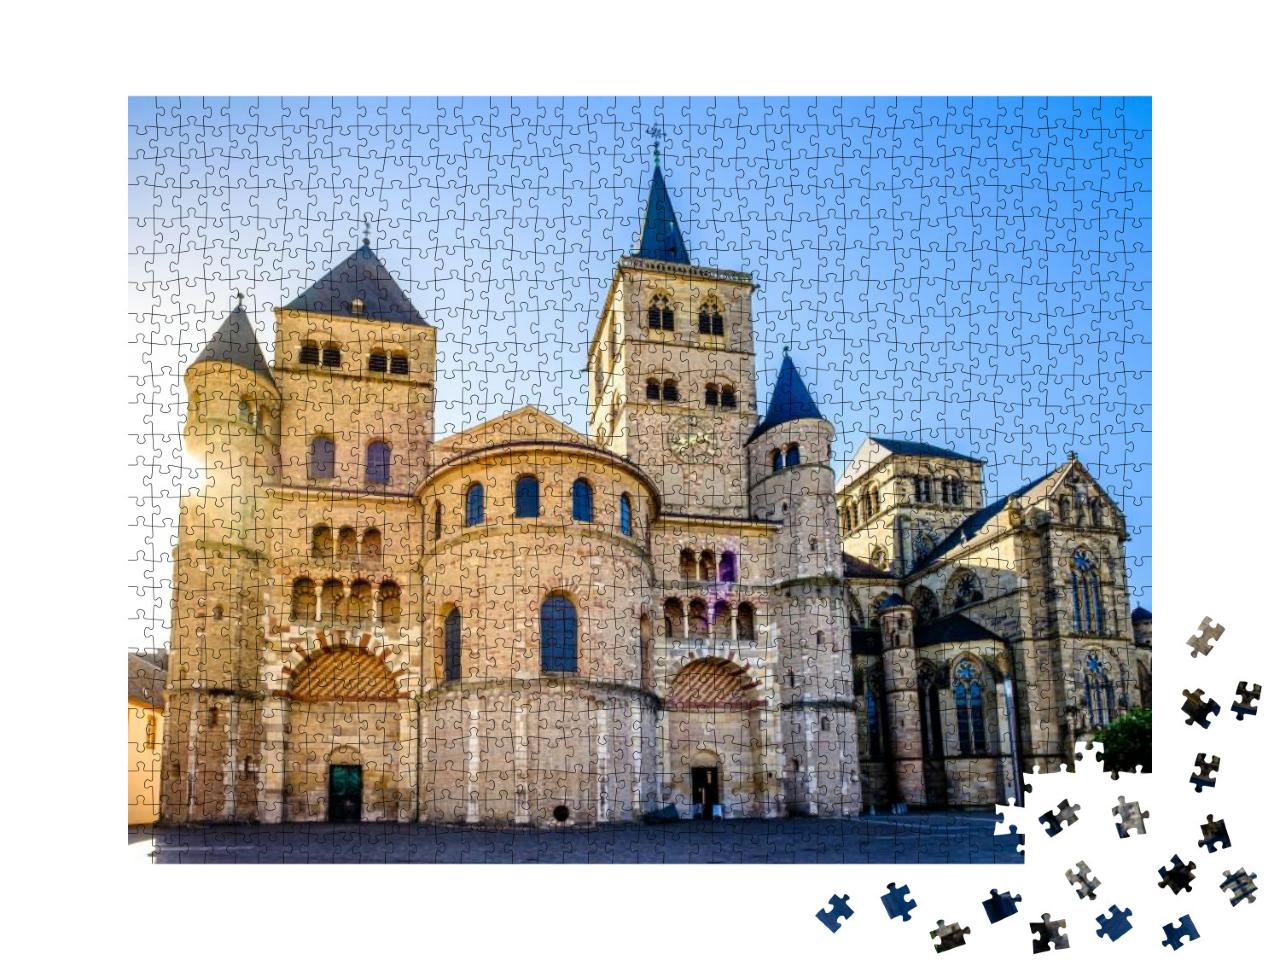 Puzzle 1000 Teile „Historische Altstadt von Trier in Deutschland“